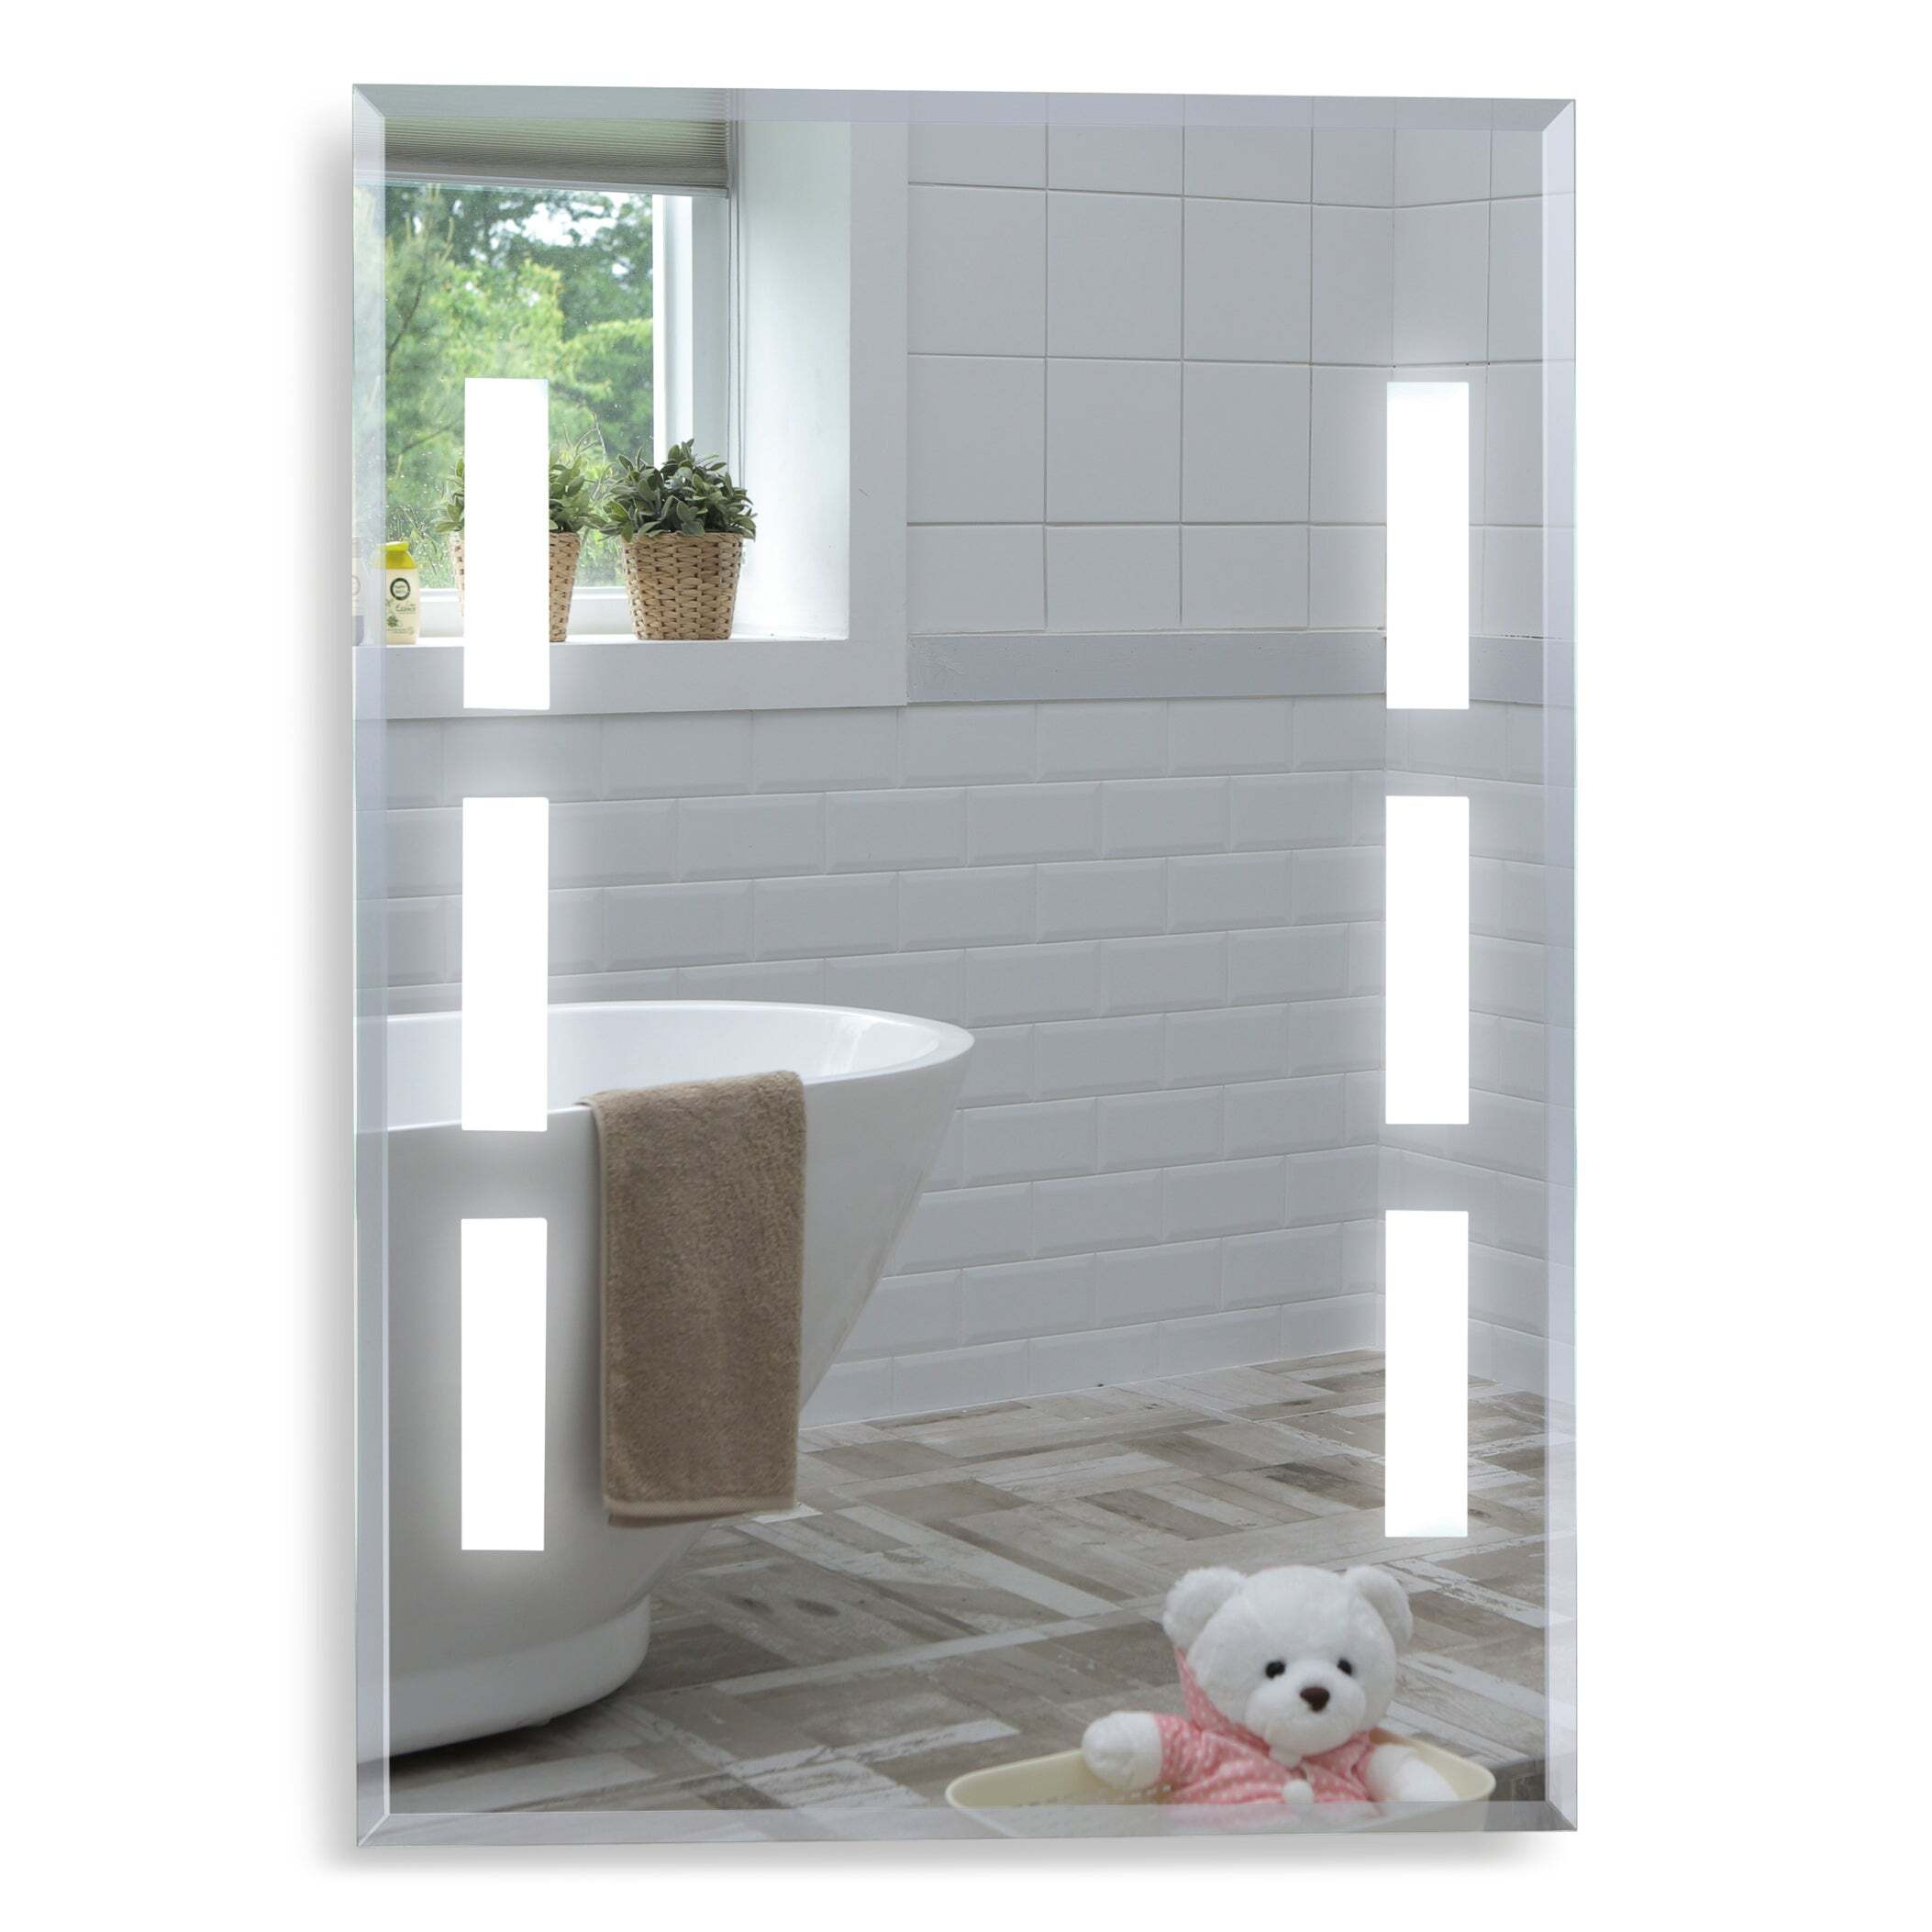 Atlas Modern Bathroom Wall Mirror YJ533 Size-80Hx60Wcm